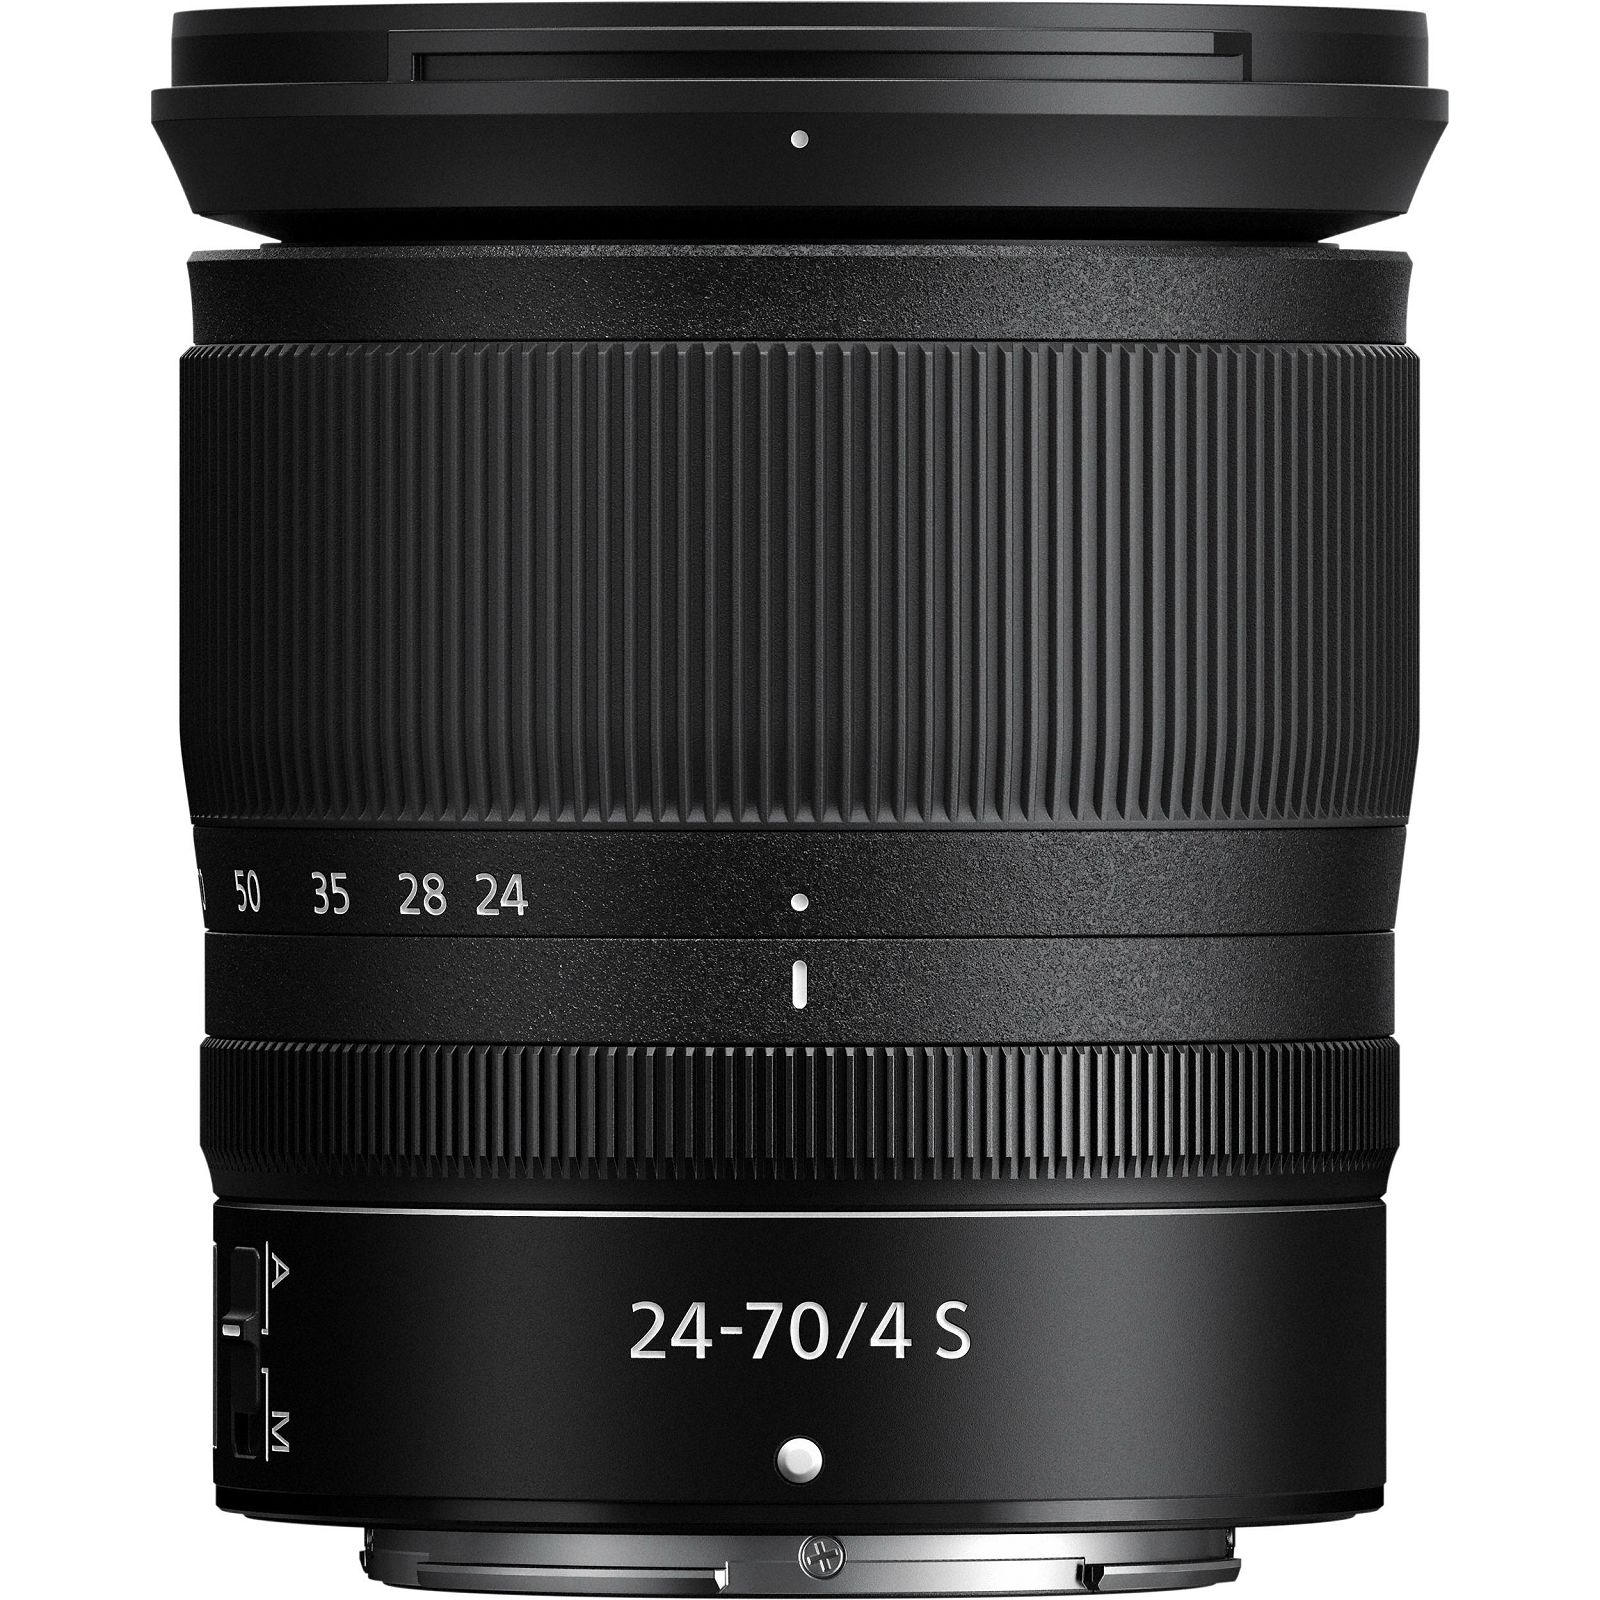 Nikon Z 24-70mm f/4 S standardni objektiv Nikkor 24-70 F4 zoom lens (JMA704DA)